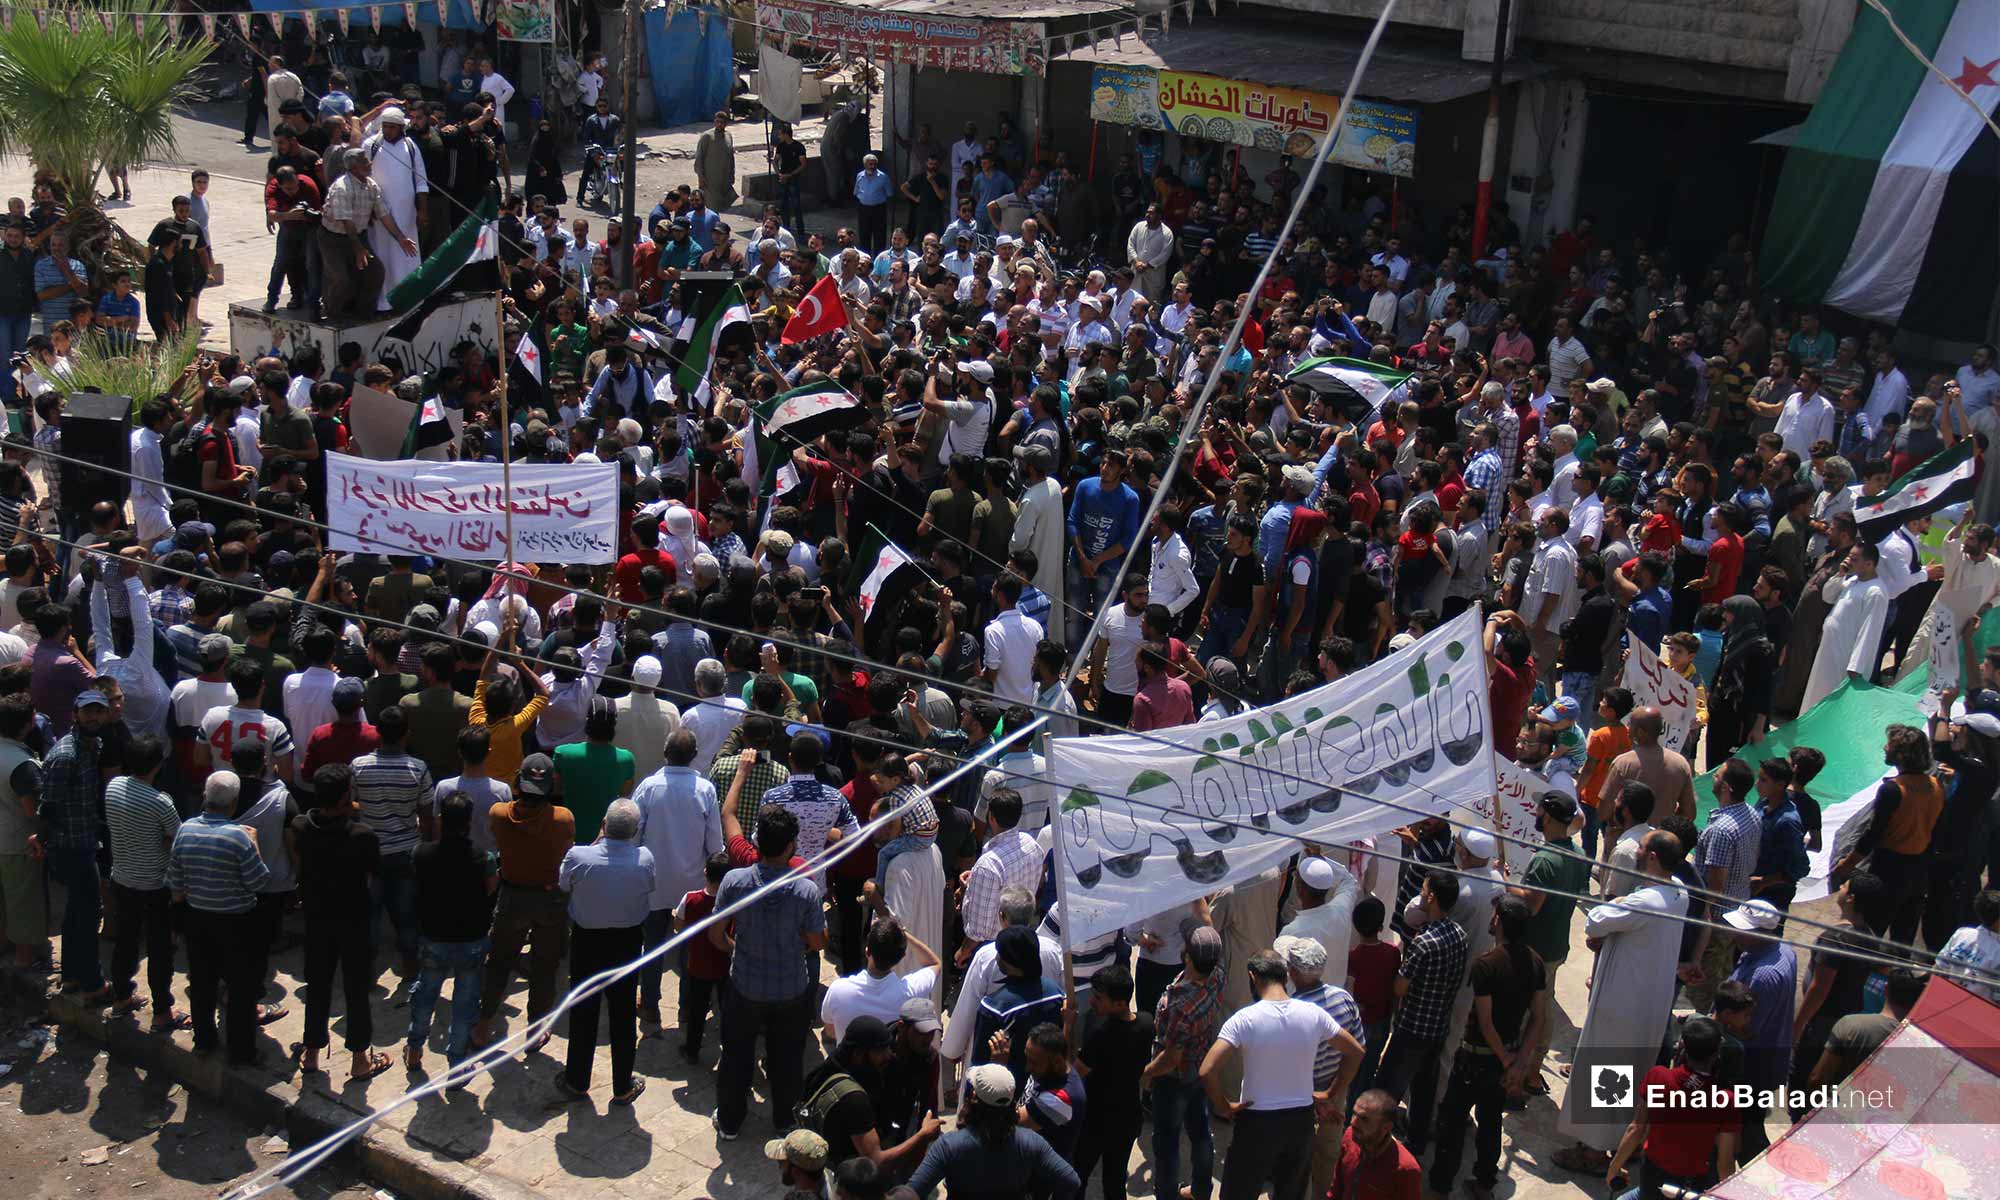 وقفة احتجاجية ضد الانتهاكات بحق المعقتلين السوريين في مدينة معرة النعمان - 3 من آب 2018 (عنب بلدي)